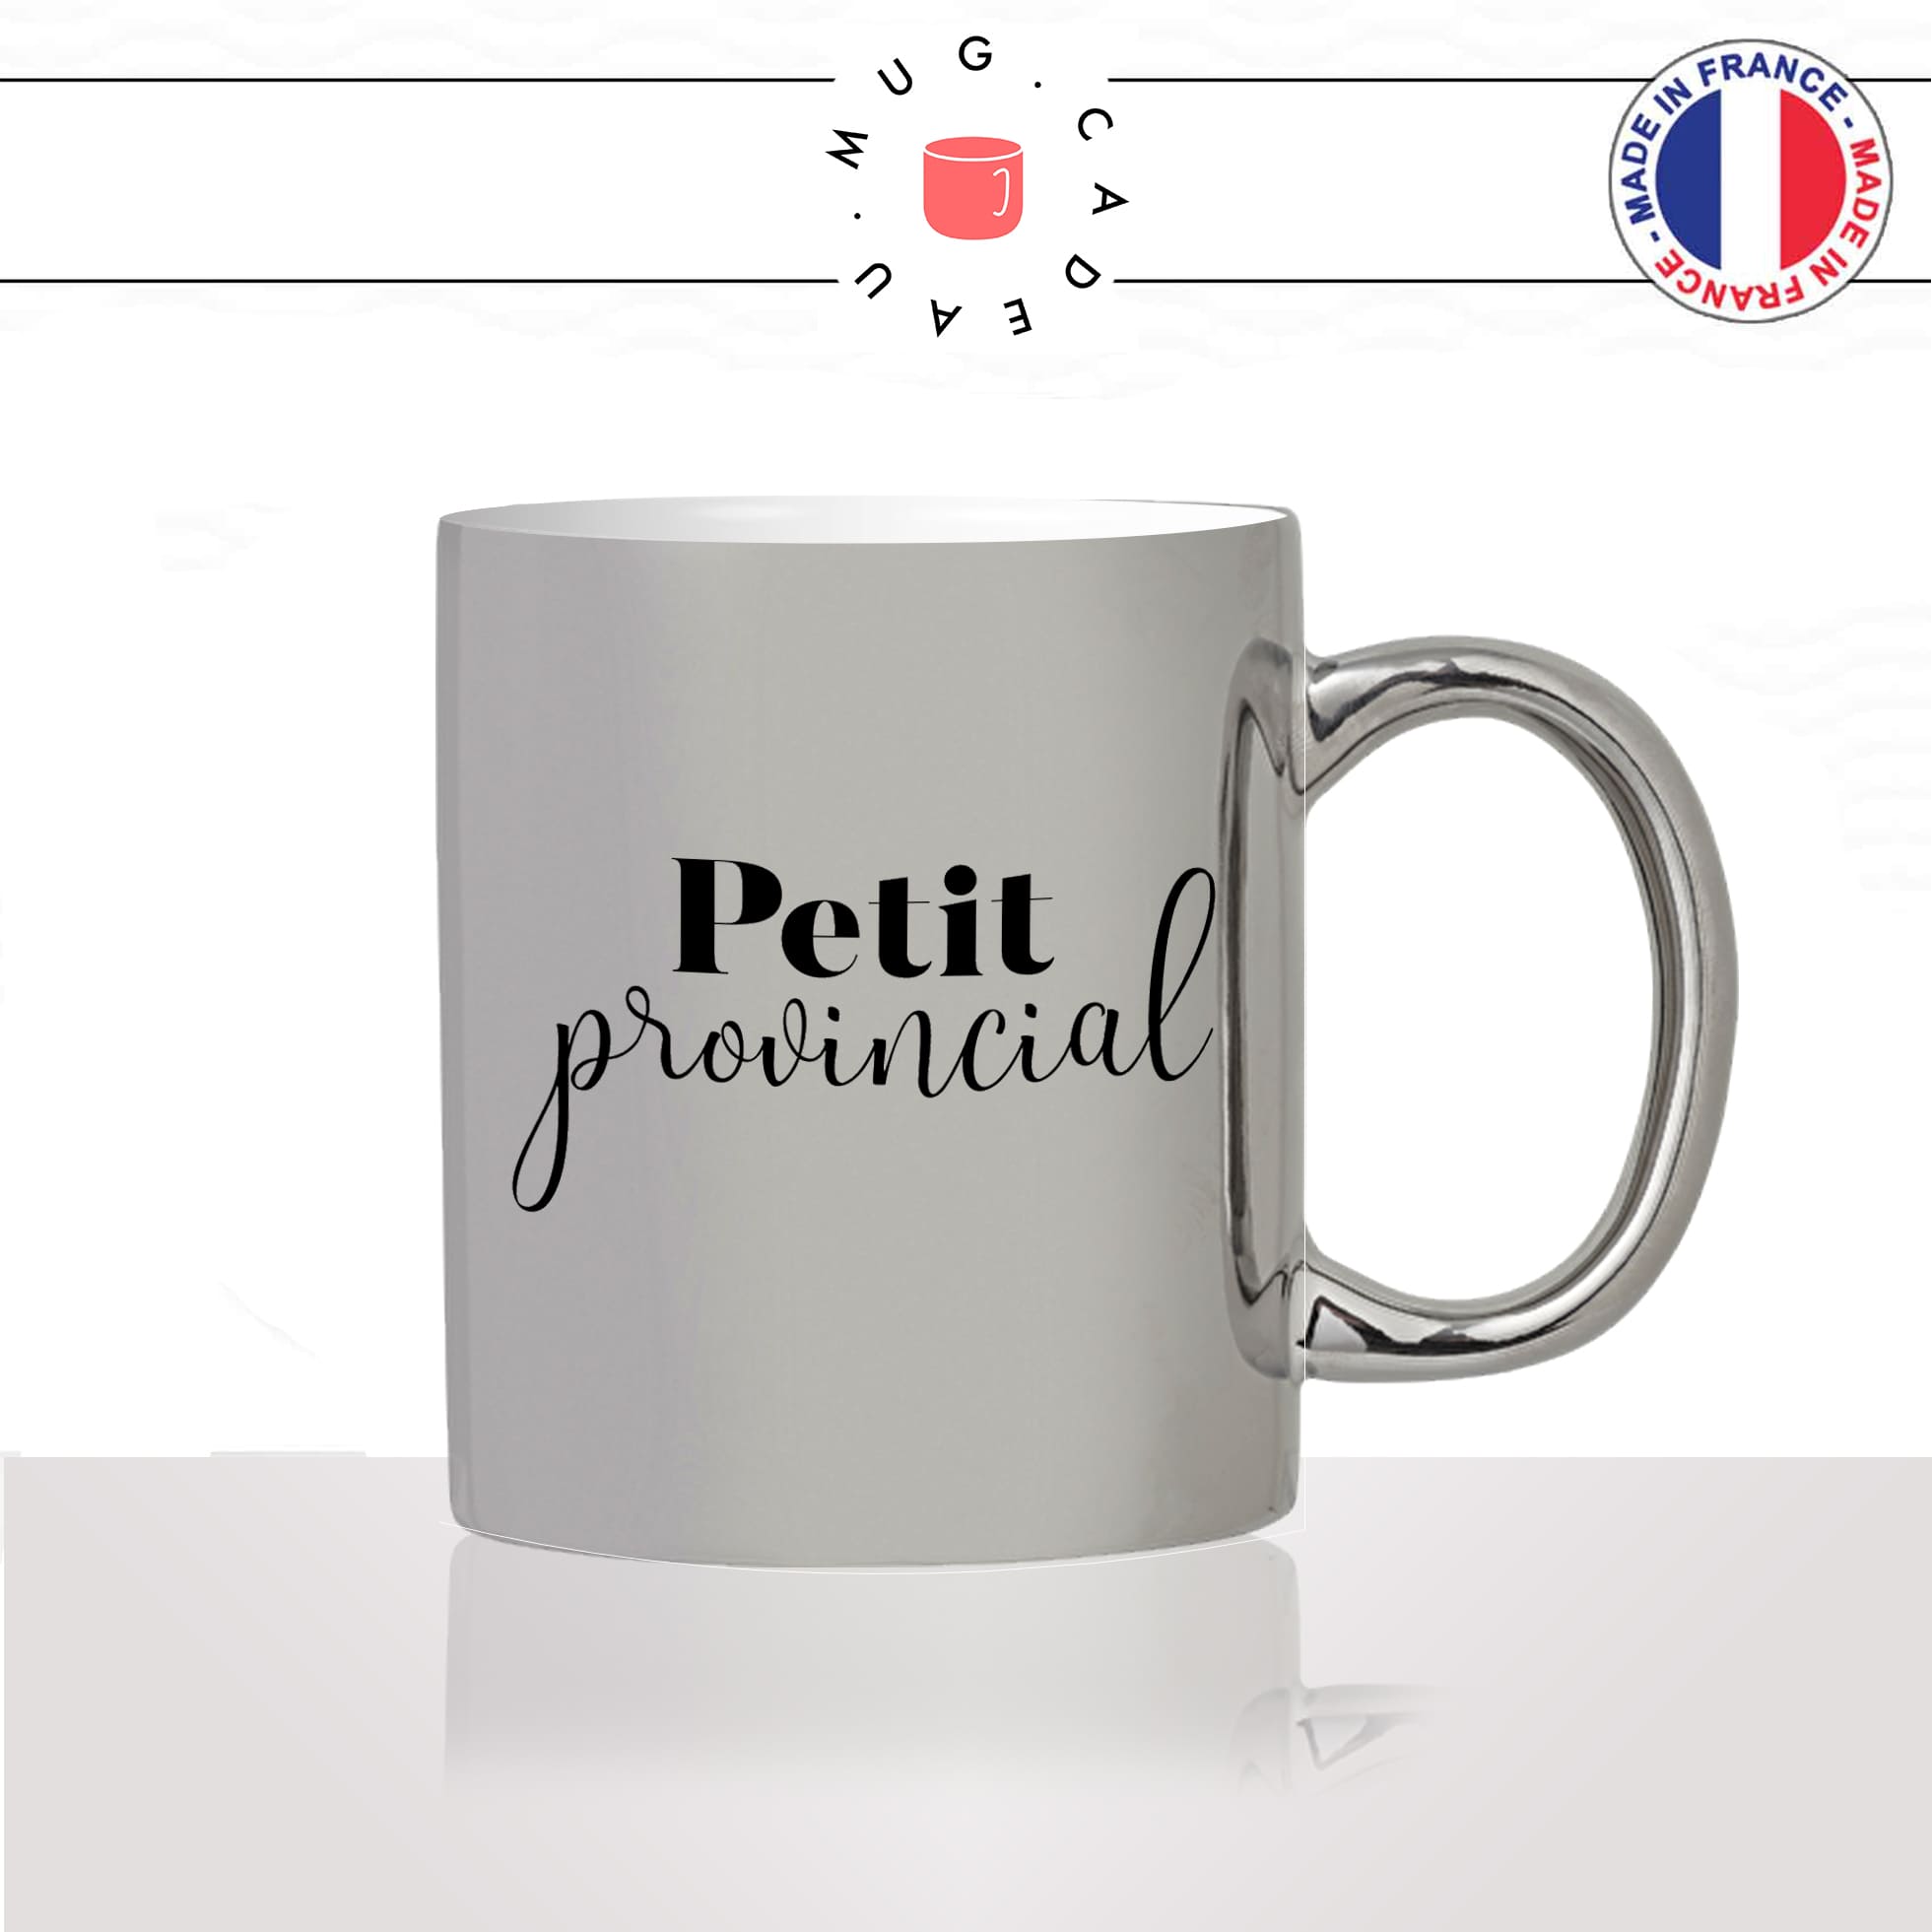 mug-tasse-argent-argenté-silver-petit-provincial-campagne-paris-mec-collegue-copain-femme-homme-idée-cadeau-fun-cool-café-thé-original2